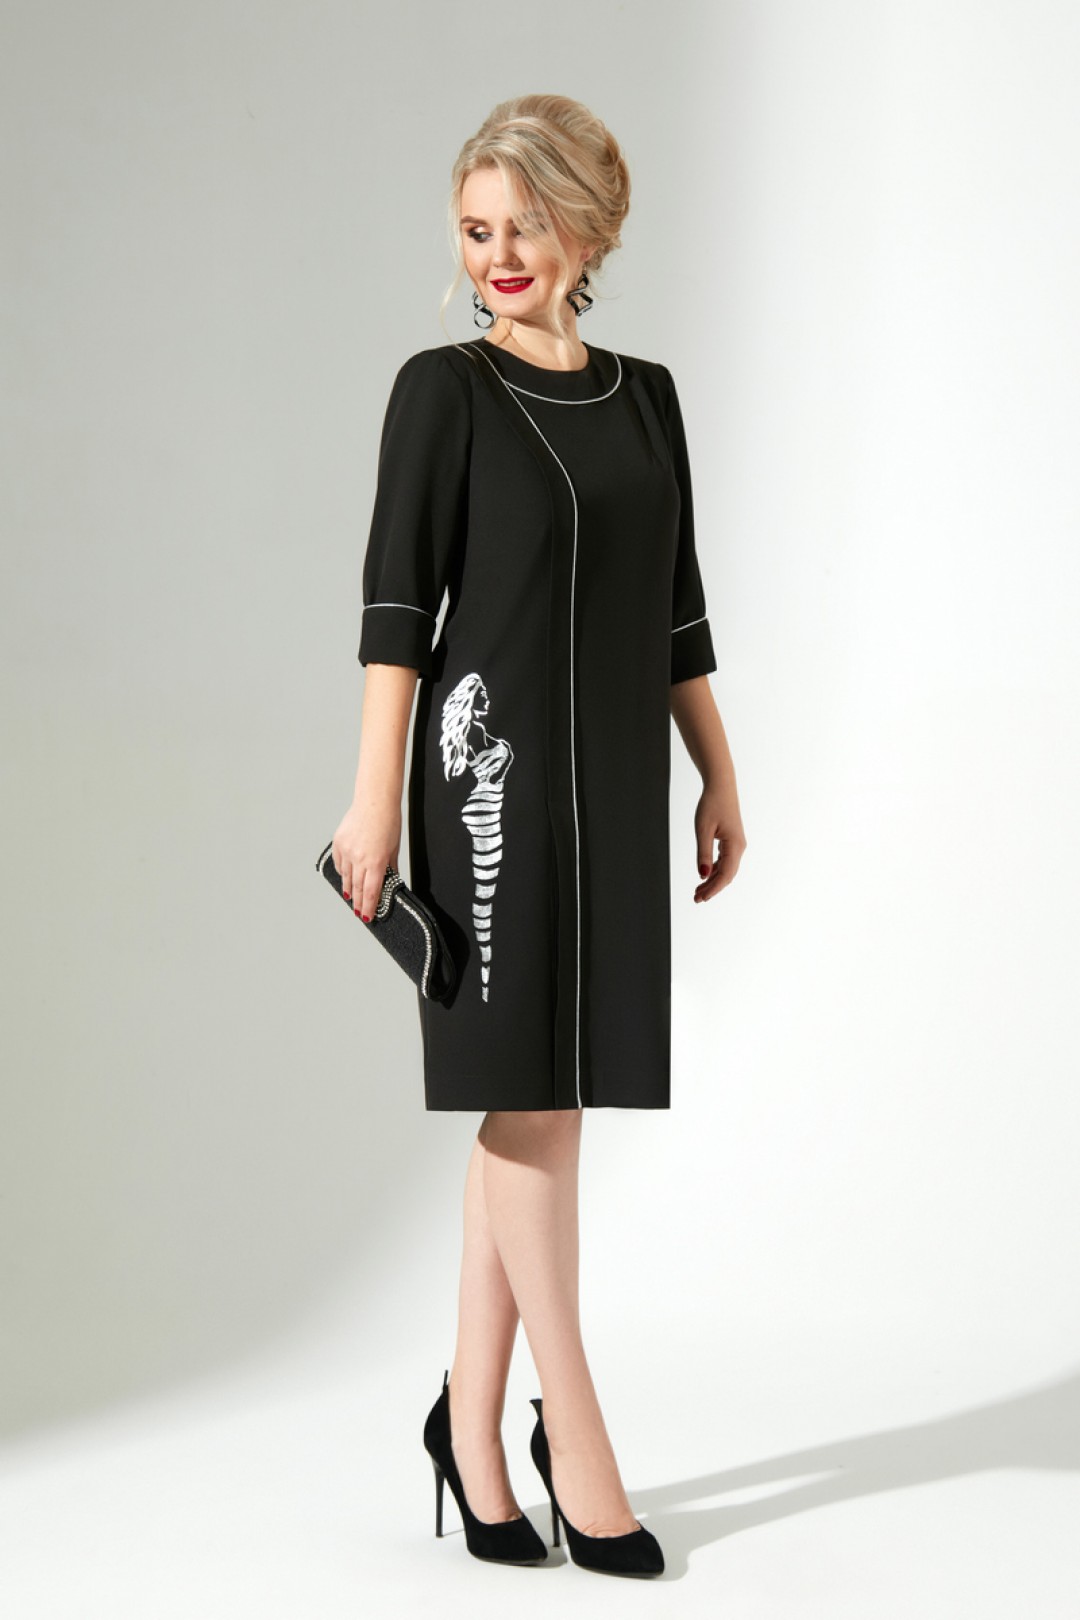 Платье ЕвроМода 329 черное с серебристым